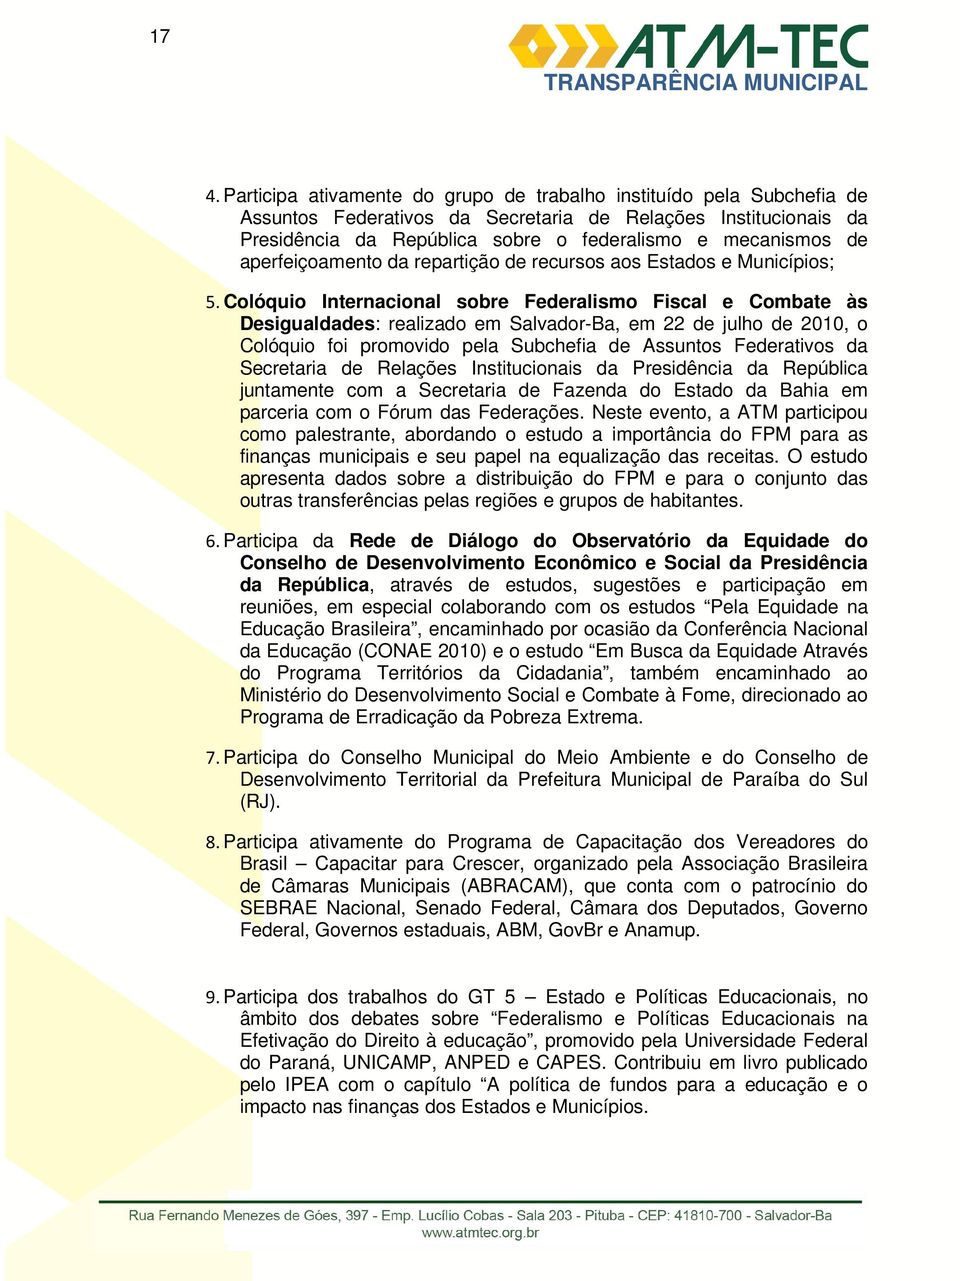 Colóquio Internacional sobre Federalismo Fiscal e Combate às Desigualdades: realizado em Salvador-Ba, em 22 de julho de 2010, o Colóquio foi promovido pela Subchefia de Assuntos Federativos da